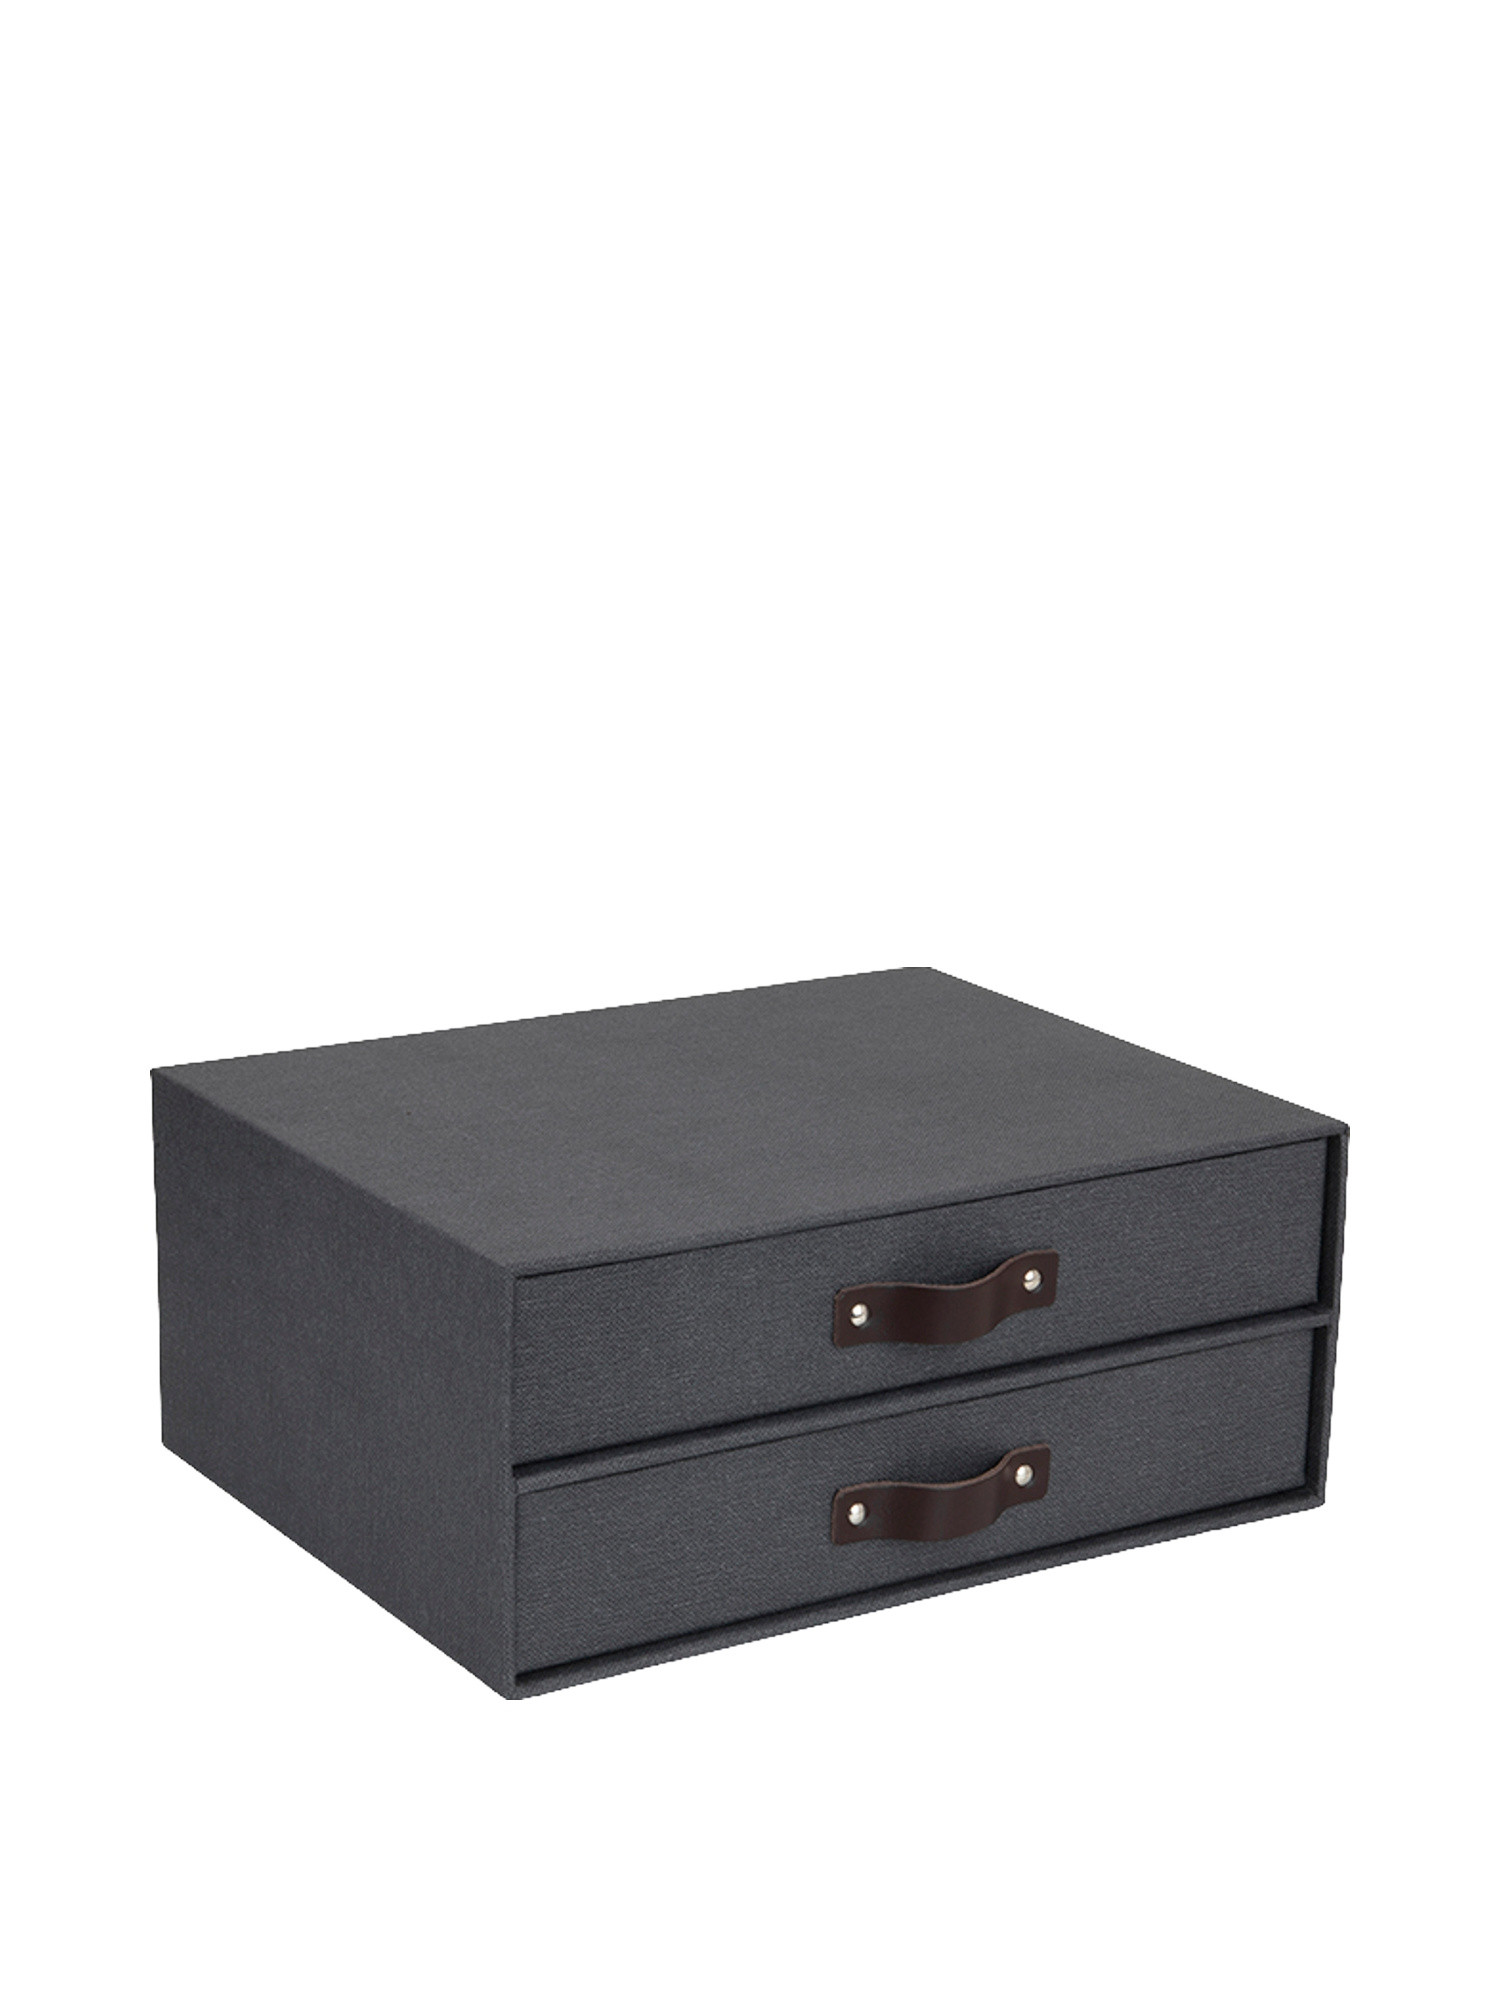 Birger desk drawer unit, Black, large image number 0